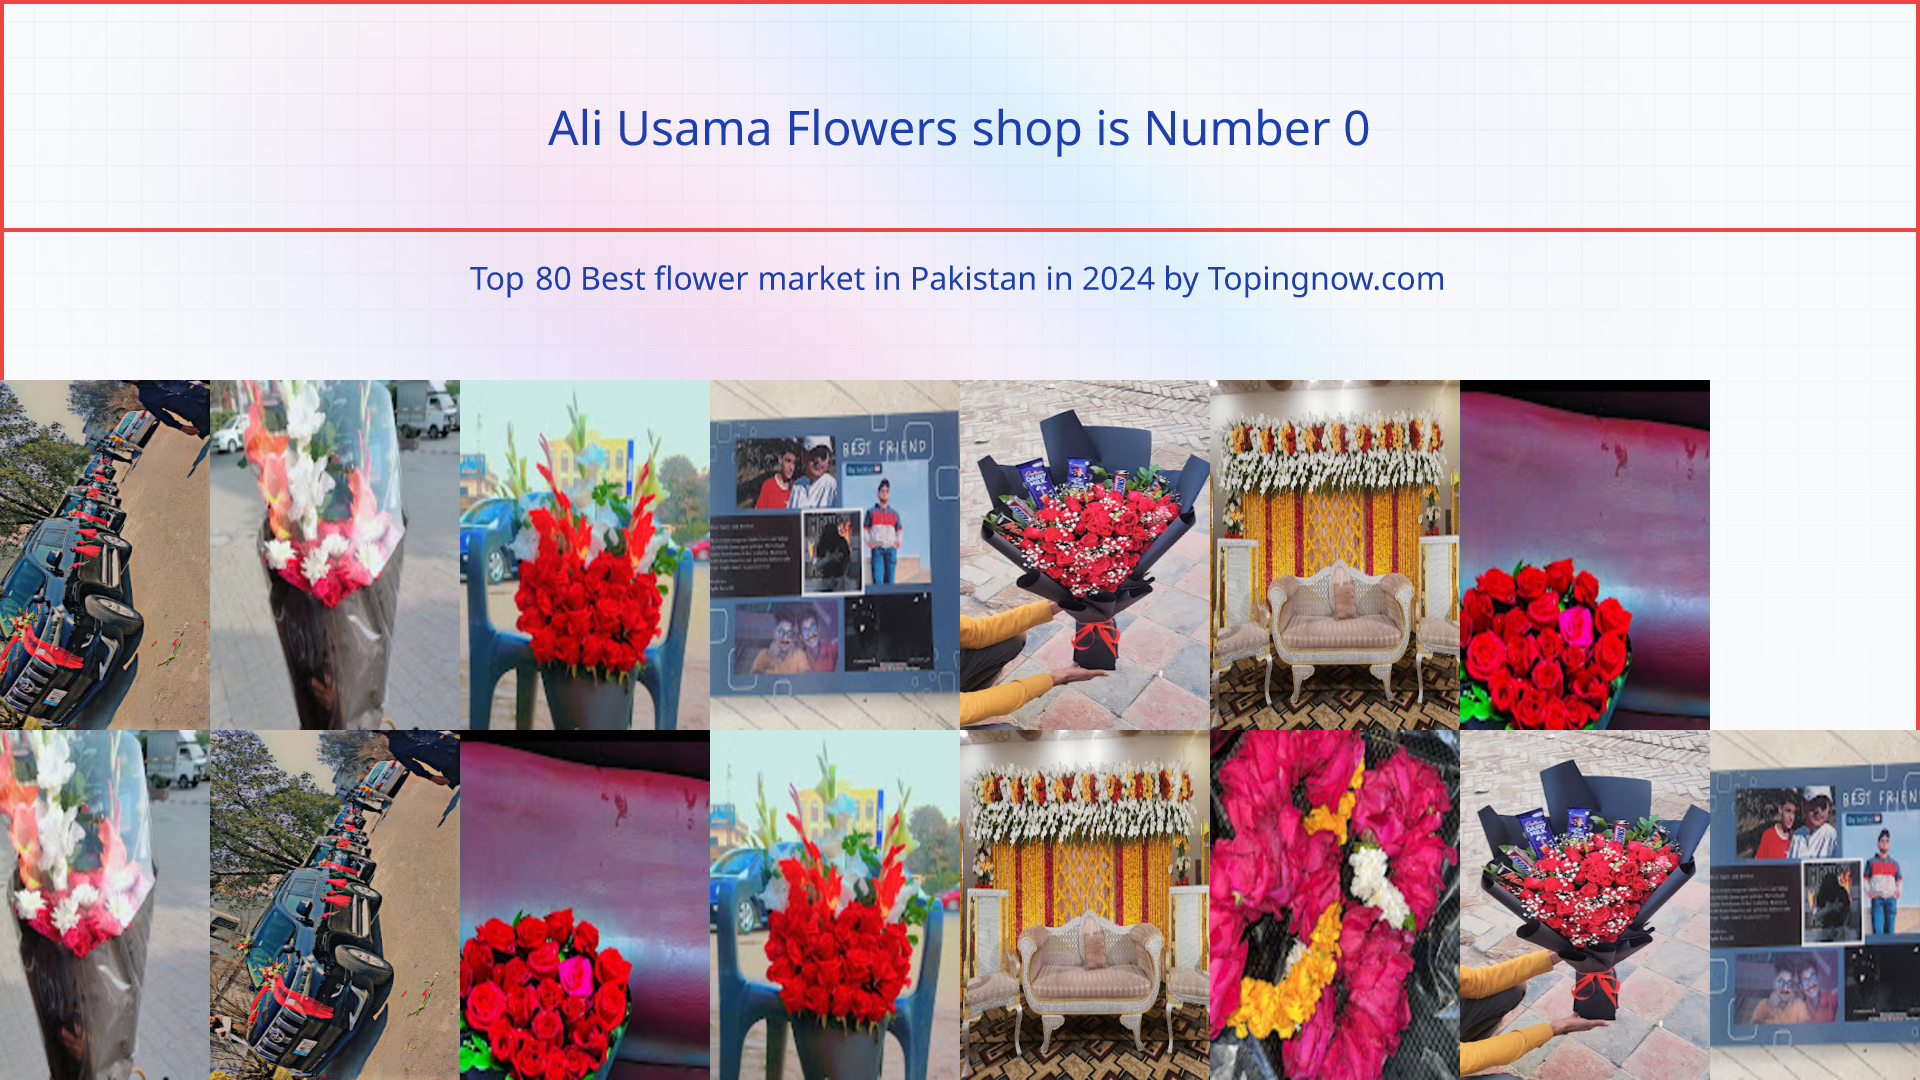 Ali Usama Flowers shop: Top 80 Best flower market in Pakistan in 2024